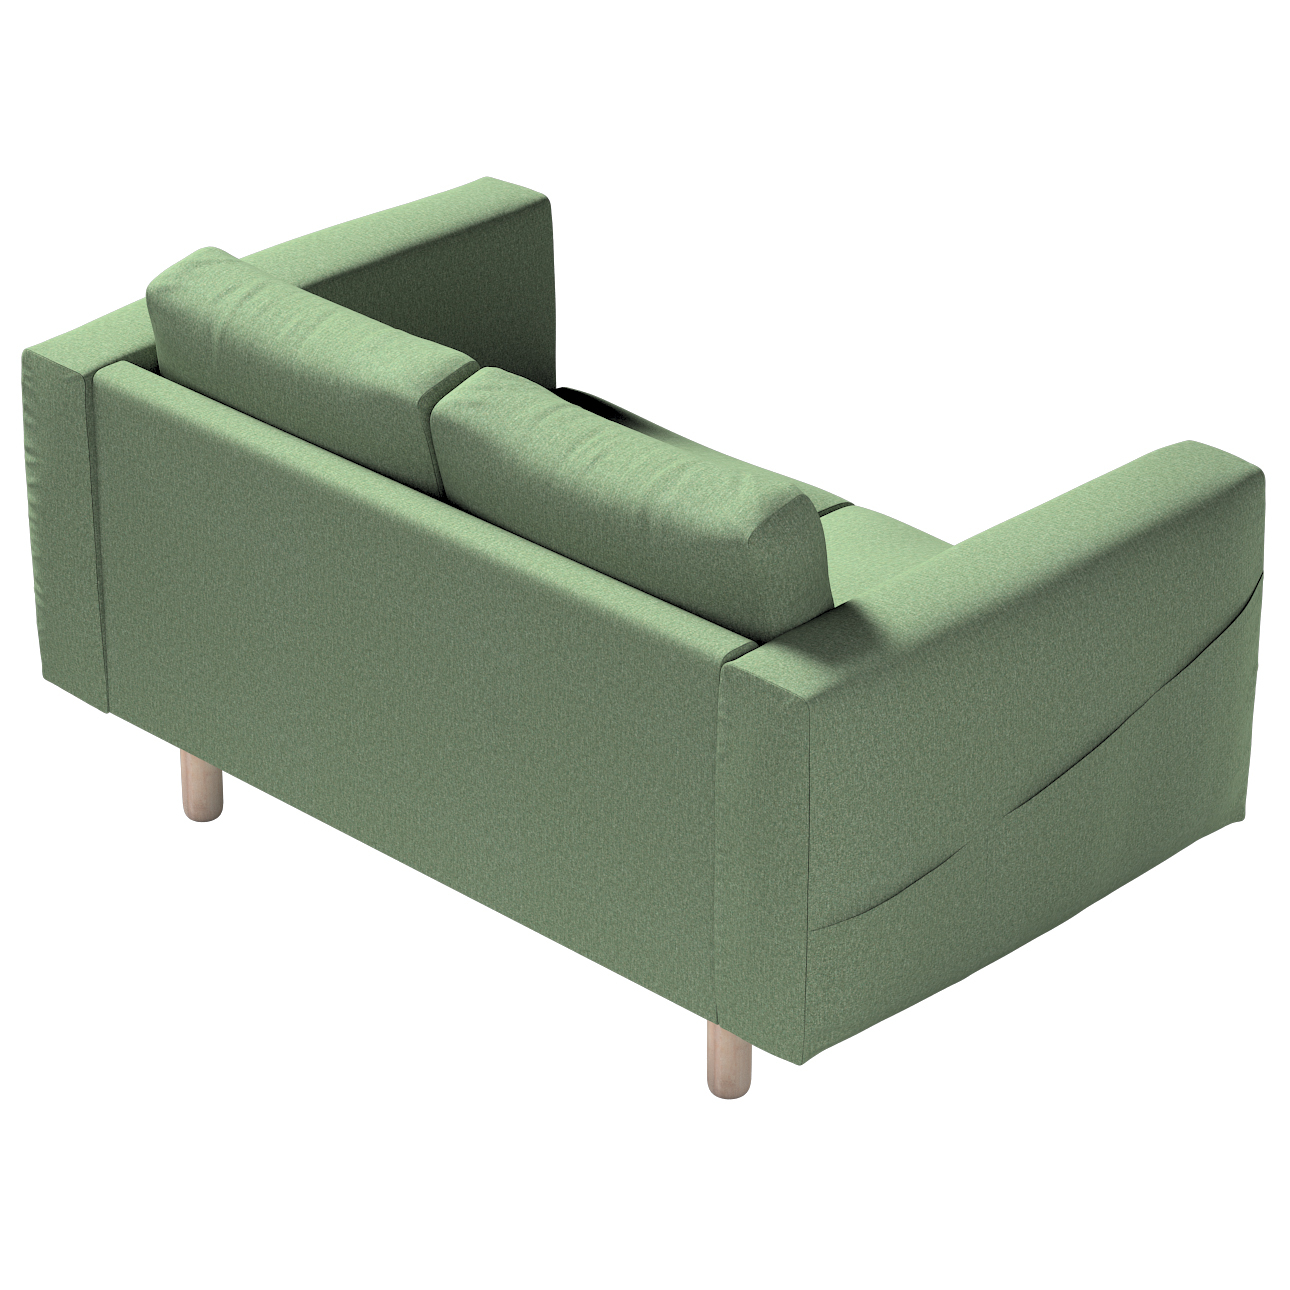 Bezug für Norsborg 2-Sitzer Sofa, grün, Norsborg 2-Sitzer Sofabezug, Amster günstig online kaufen